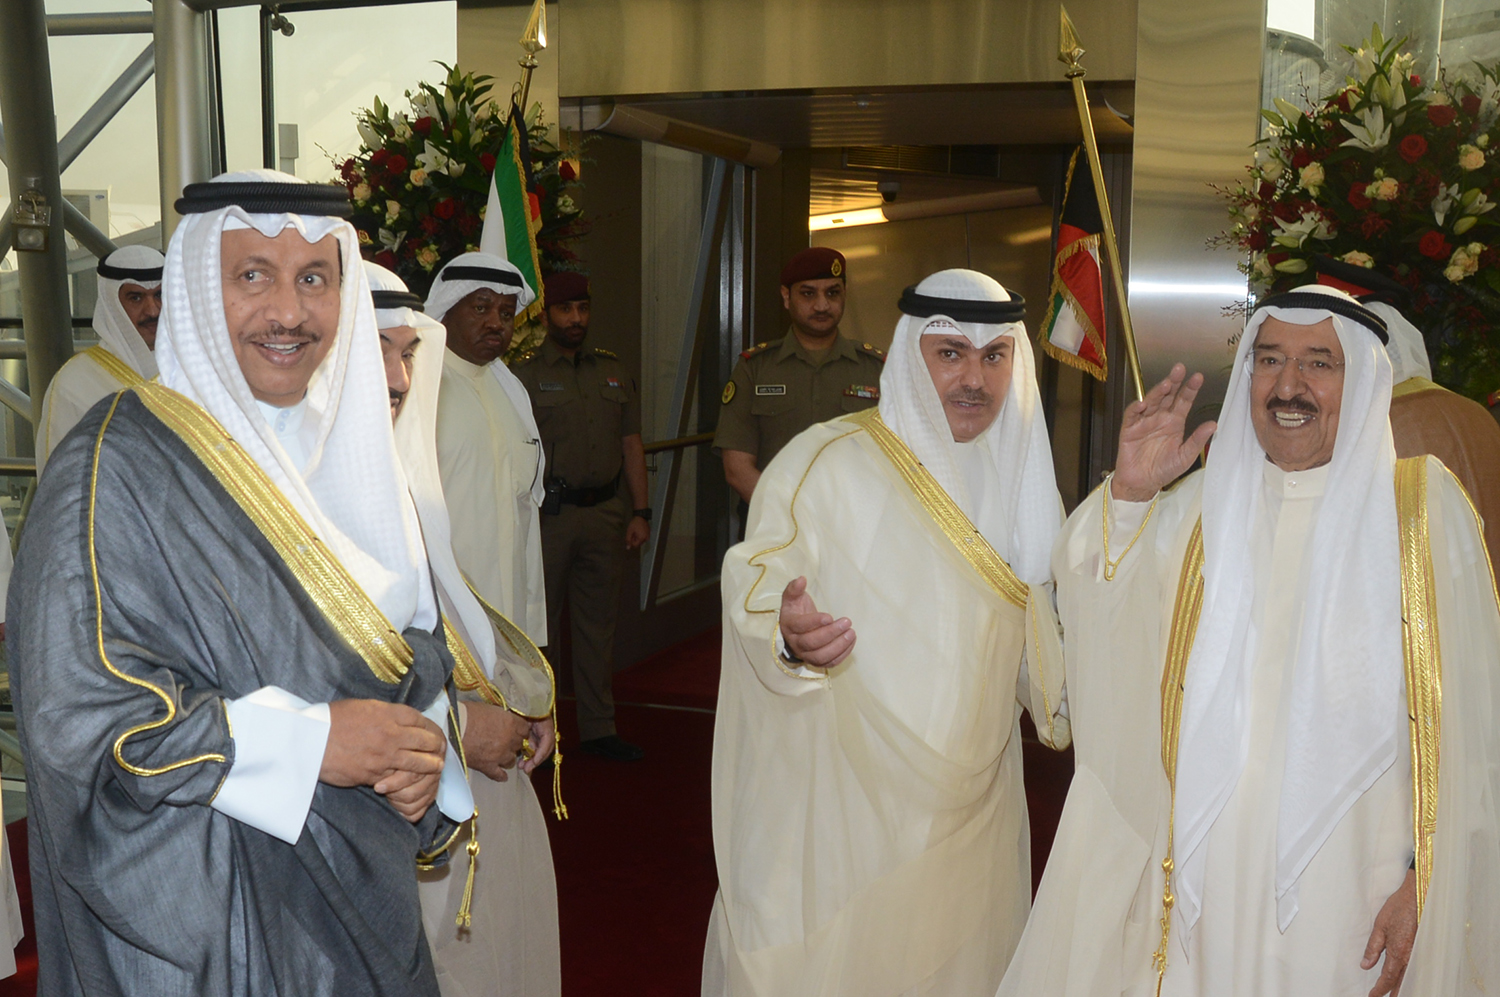 حضرة صاحب السمو أمير البلاد الشيخ صباح الأحمد الجابر الصباح يتوجه إلى الولايات المتحدة الأمريكية في زيارة رسمية